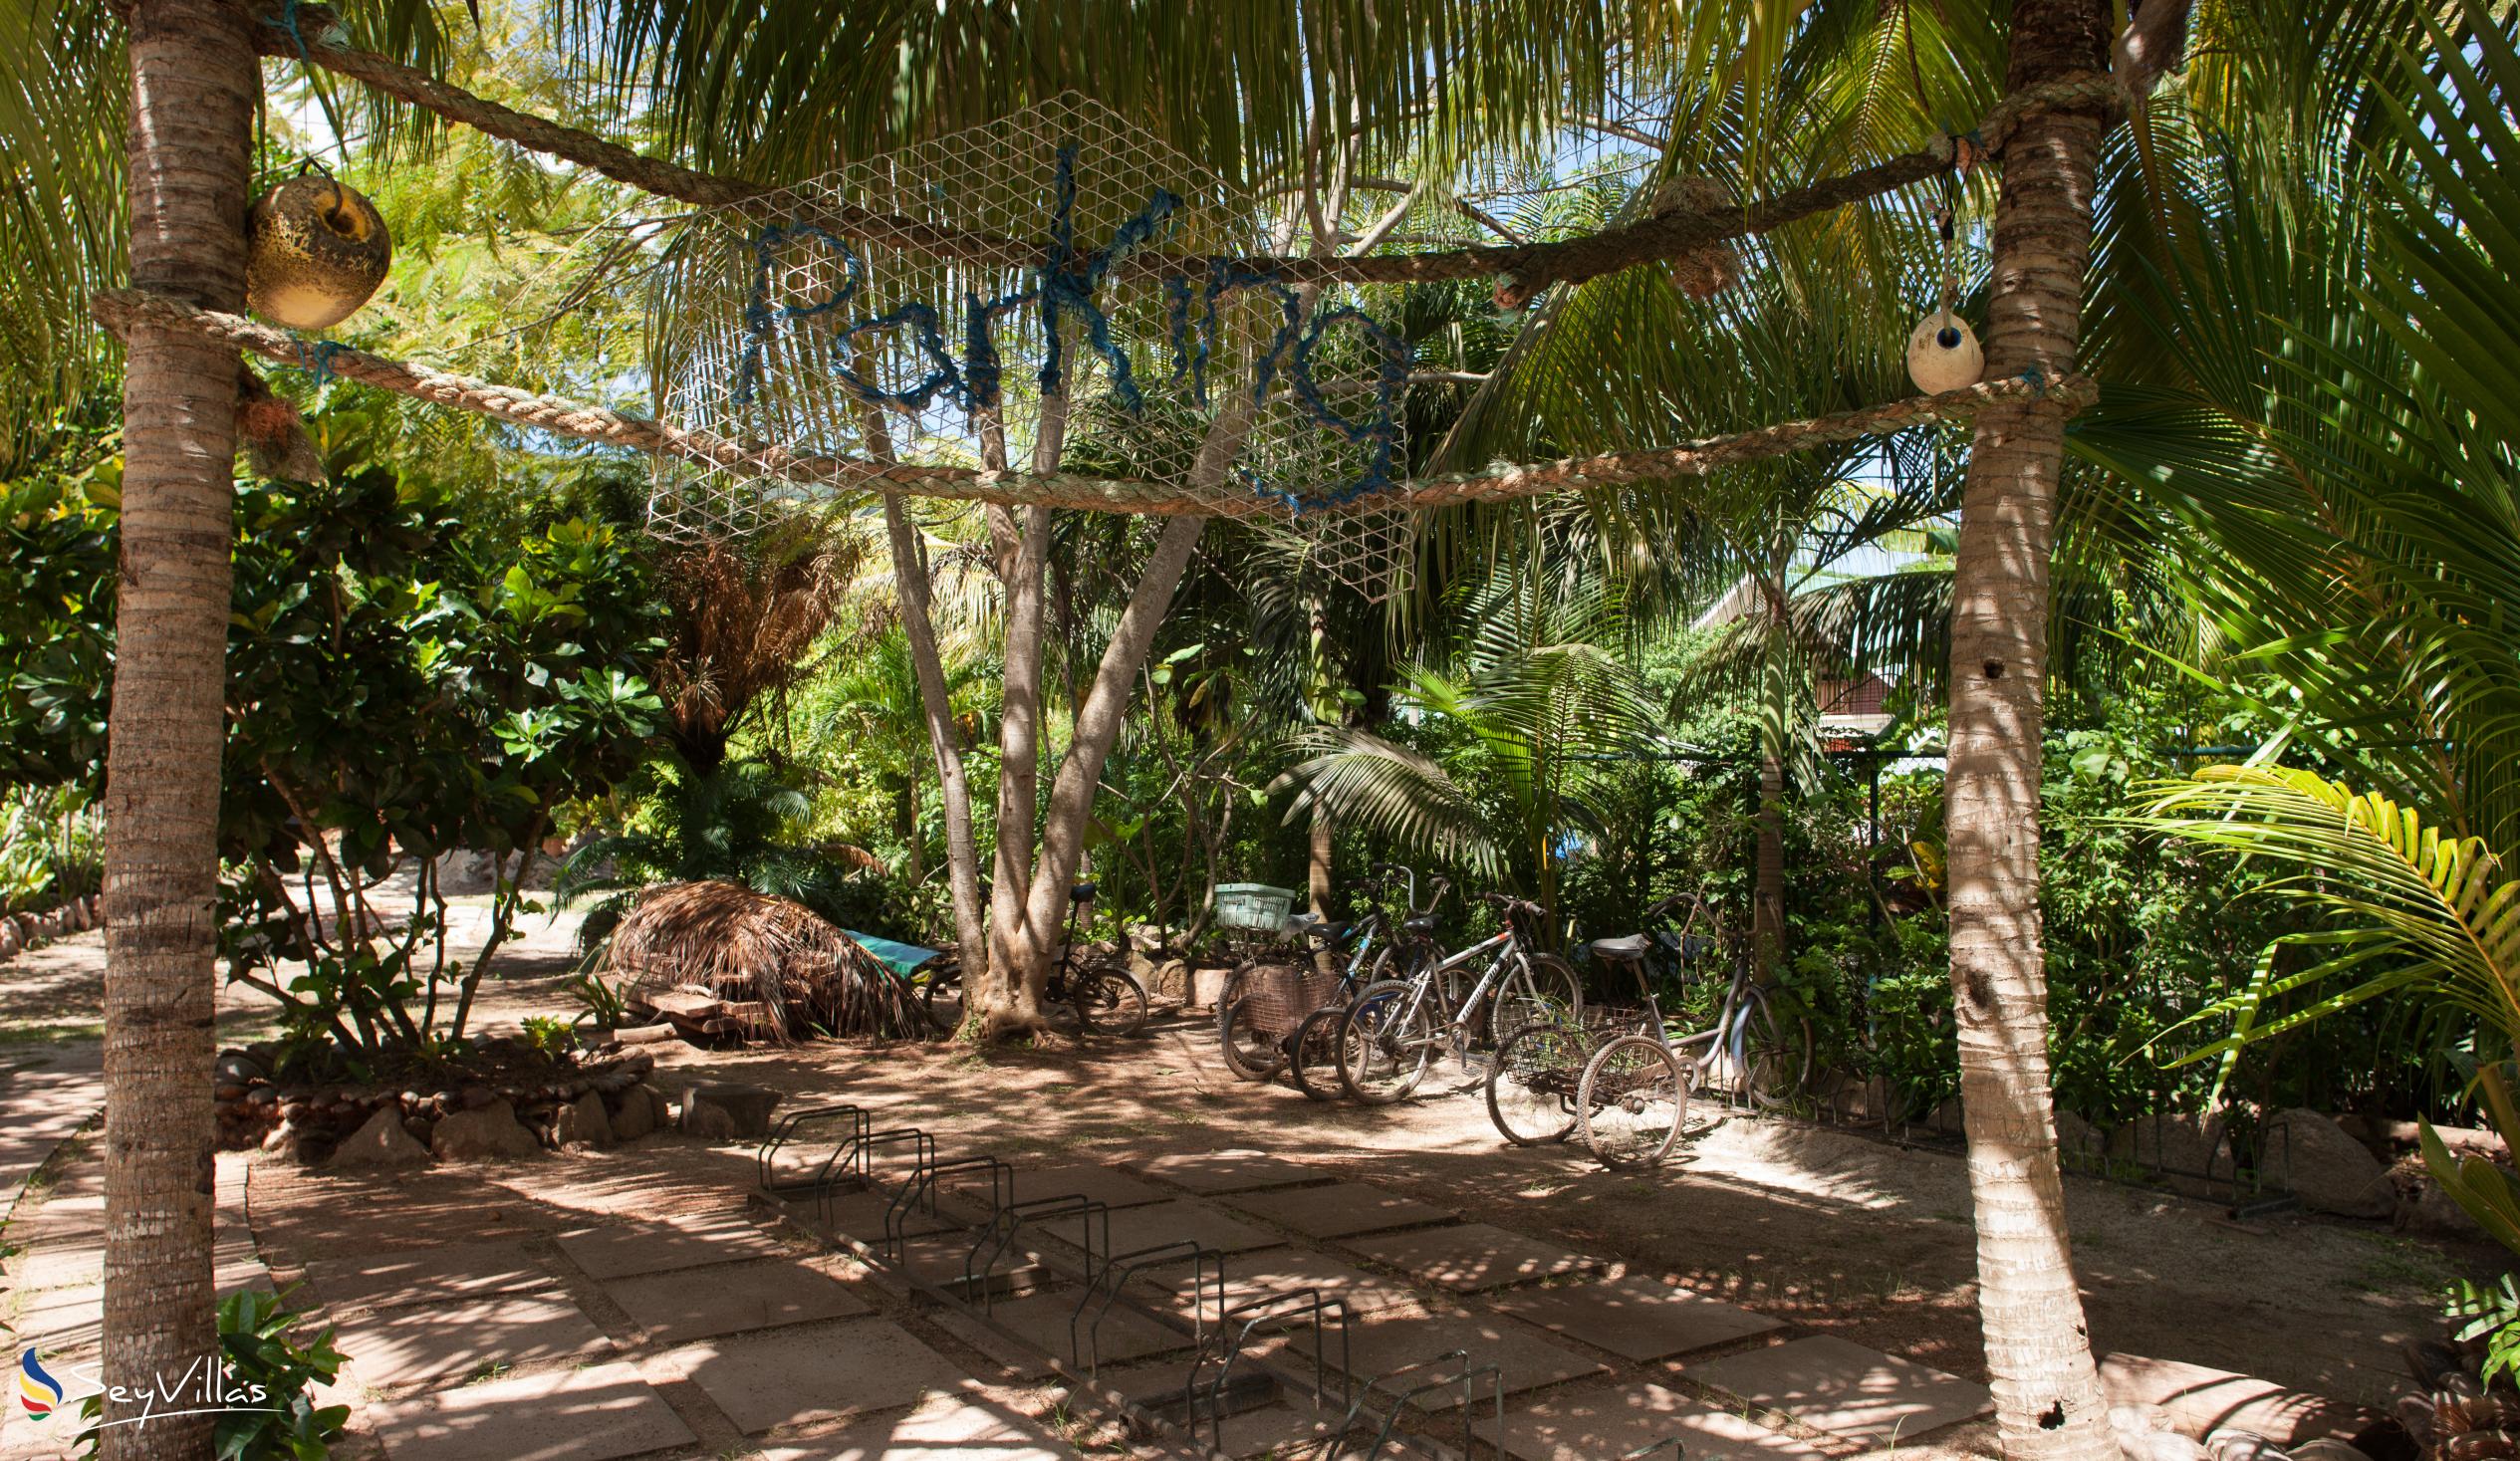 Photo 12: Domaine Les Rochers - Outdoor area - La Digue (Seychelles)